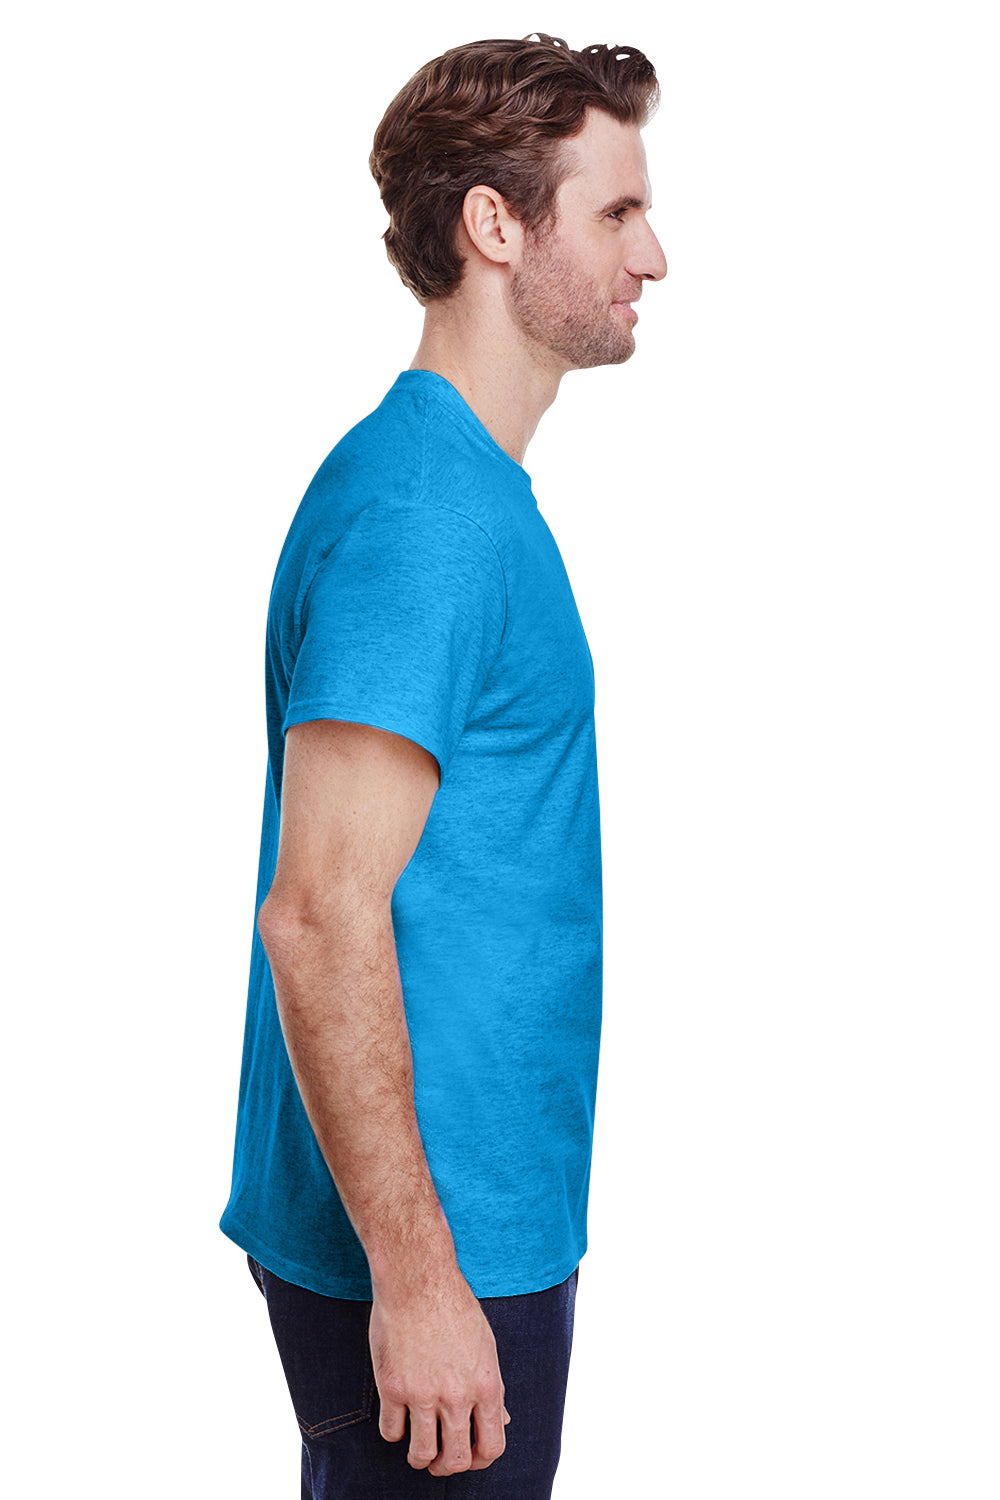 Gildan G500 Mens Short Sleeve Crewneck T-Shirt Heather Sapphire Blue Side